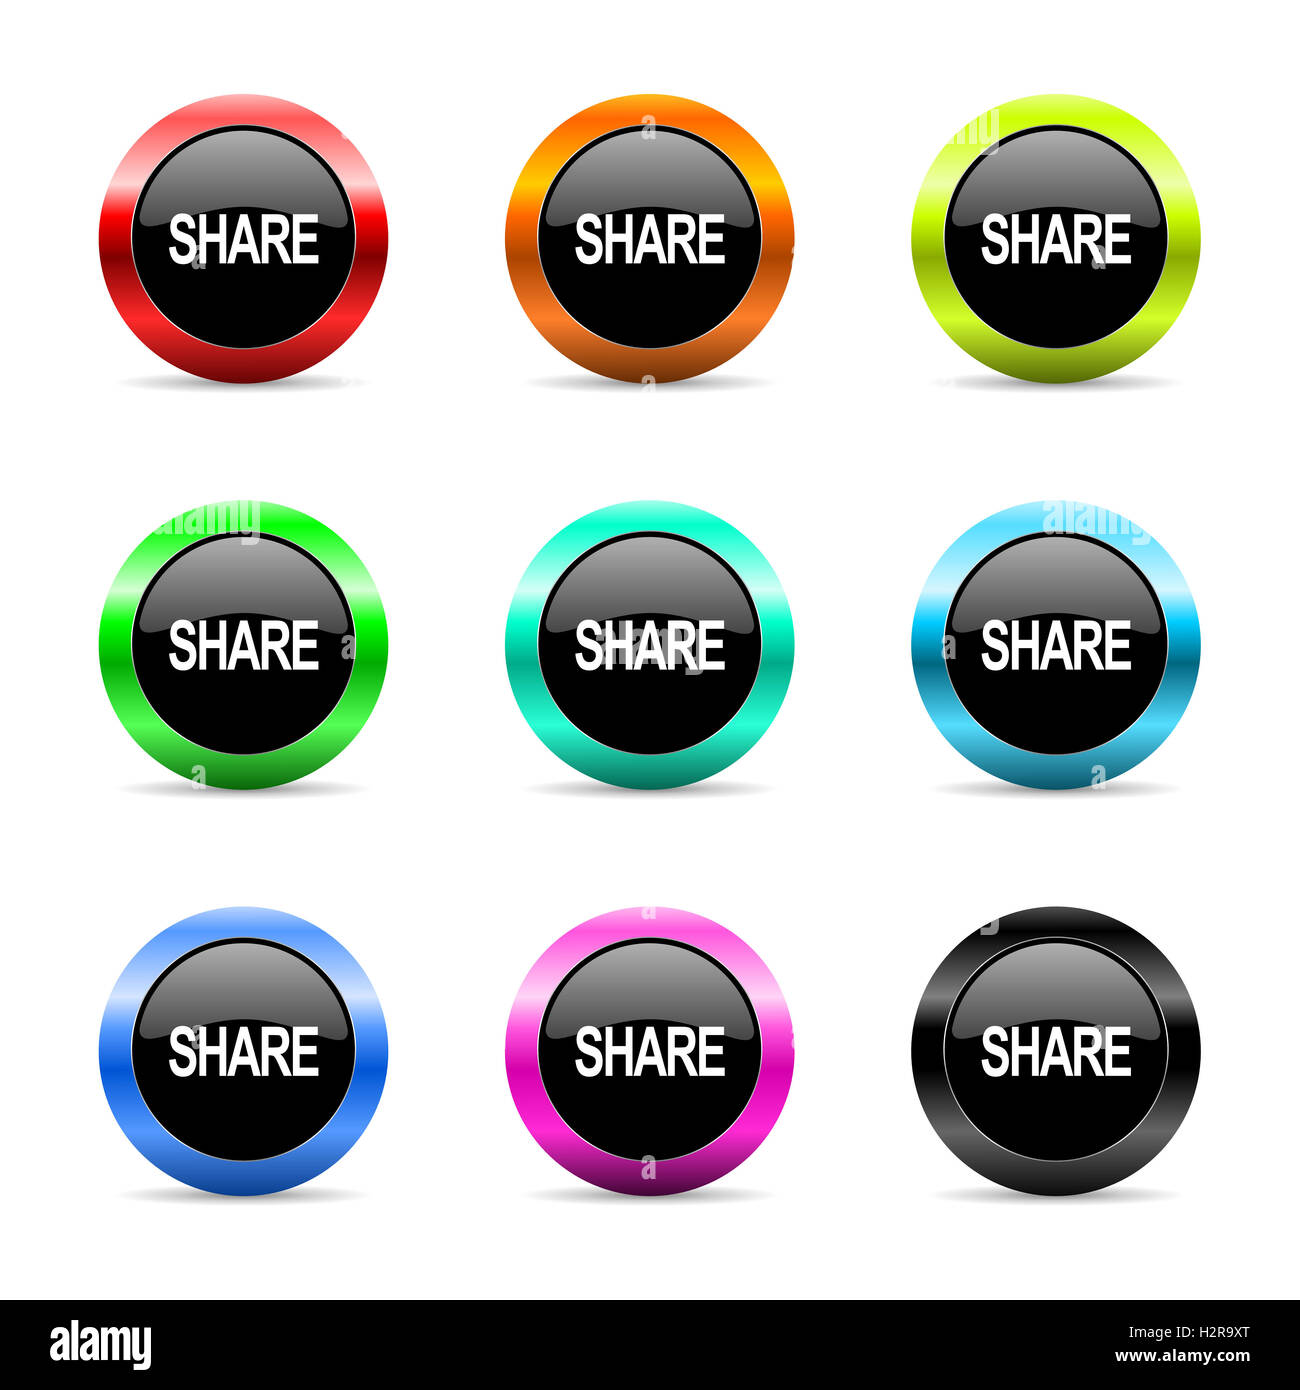 share web icons set Stock Photo